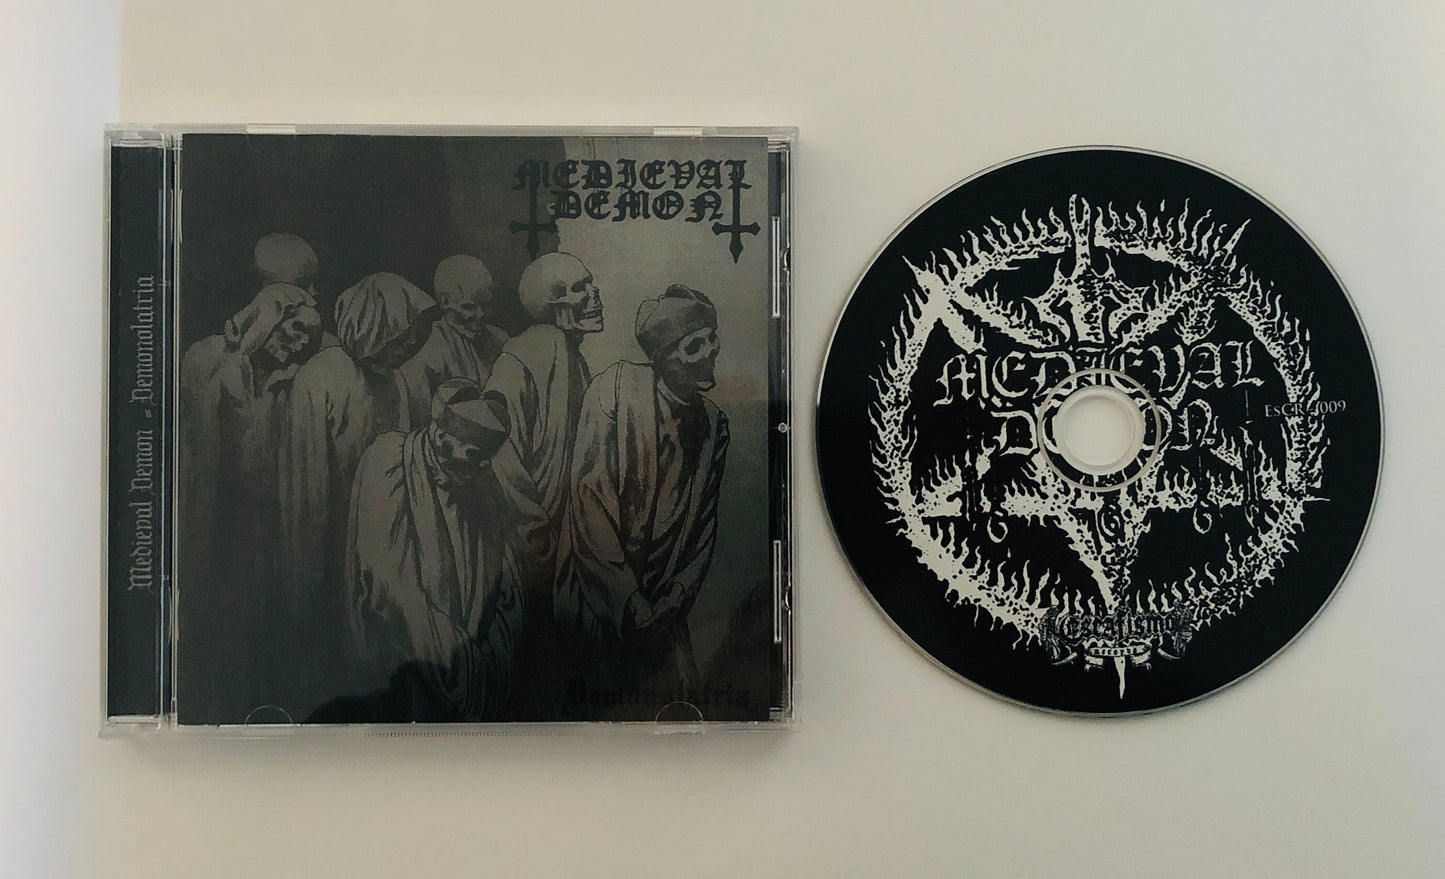 ESCR-009: Medieval Demon (Gre) "Demonolatria" - CDs